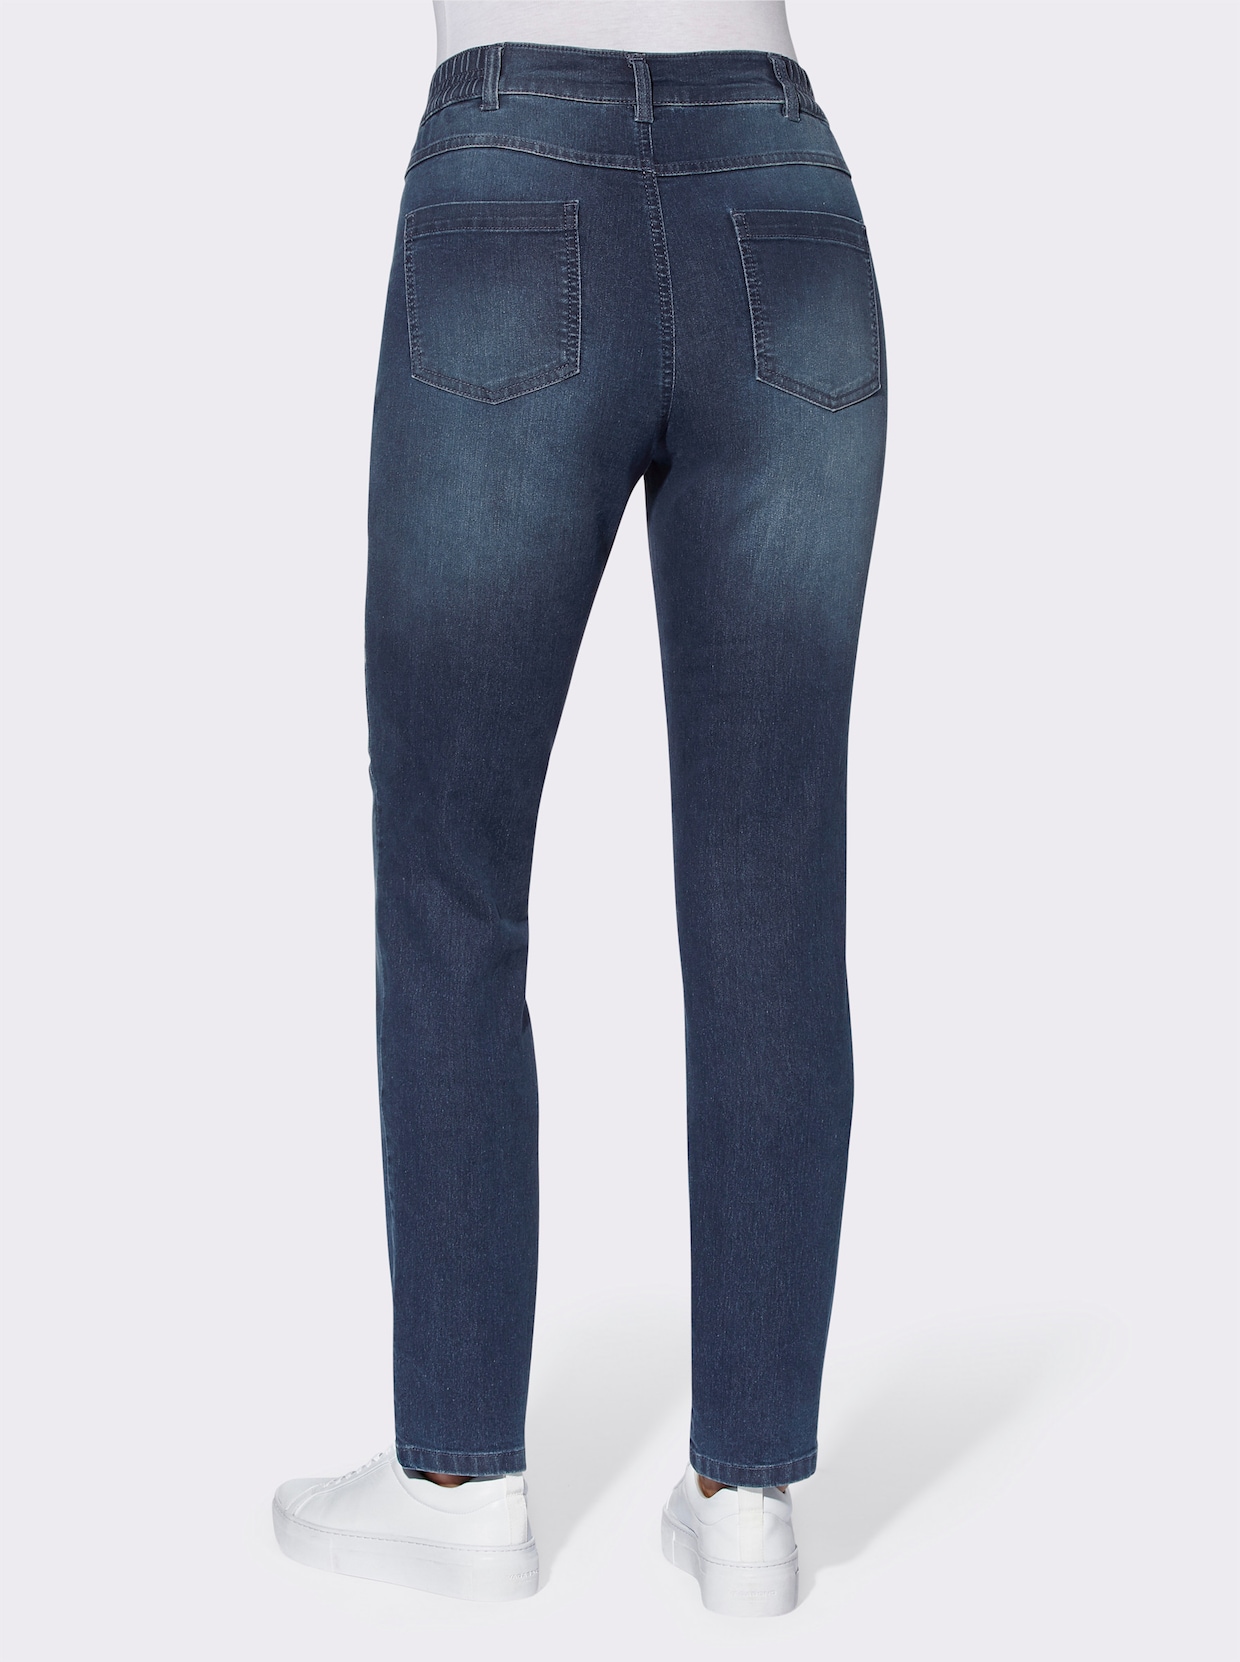 Jeans - blue-stonewashed